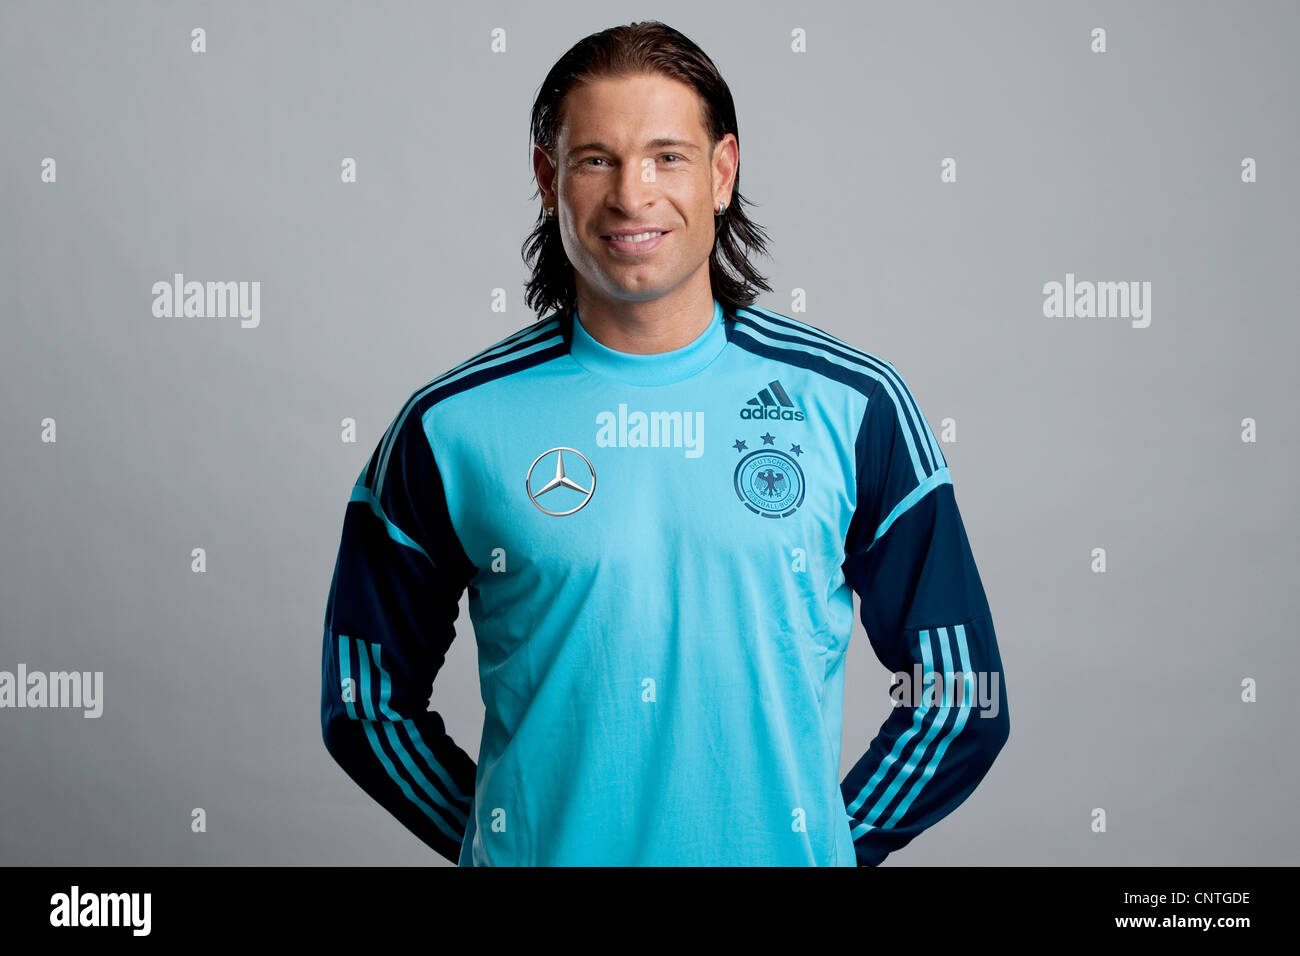 goalkeeper Tim WIESE, German National Football Team Stock Photo